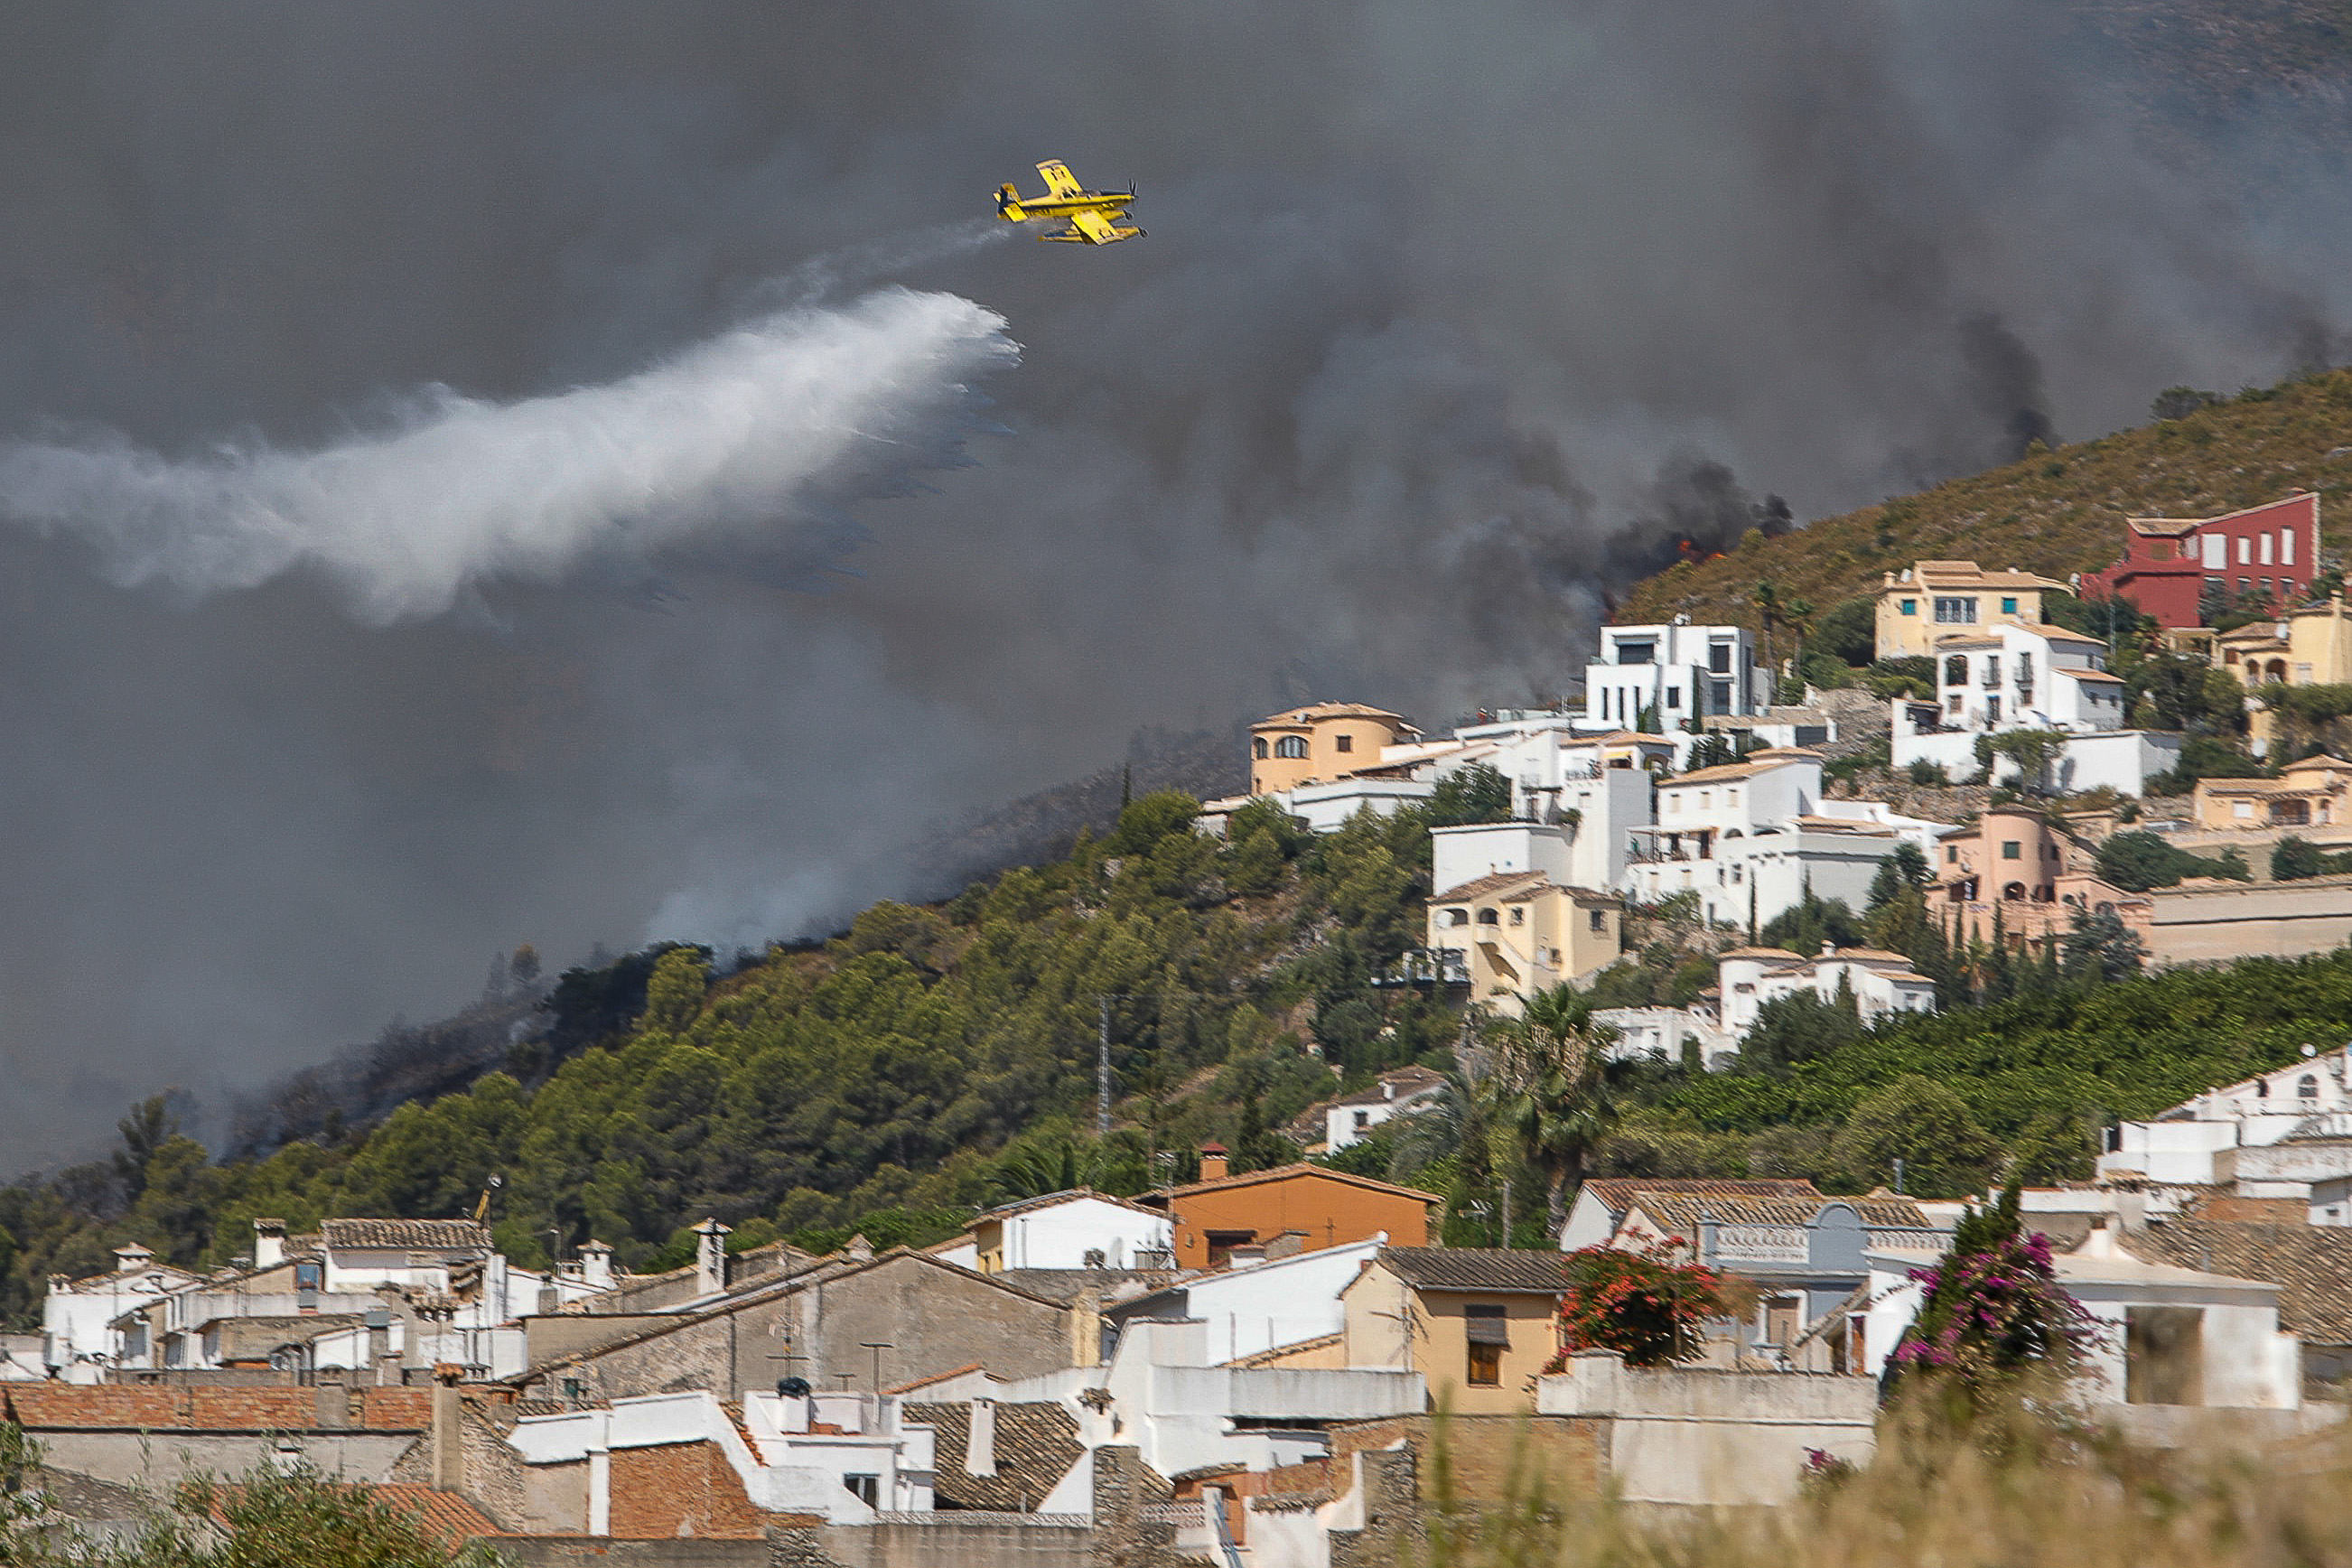 Una avioneta realiza una descarga de agua sobre las llamas que avanzan hacia una zona de viviendas en la Atzubia